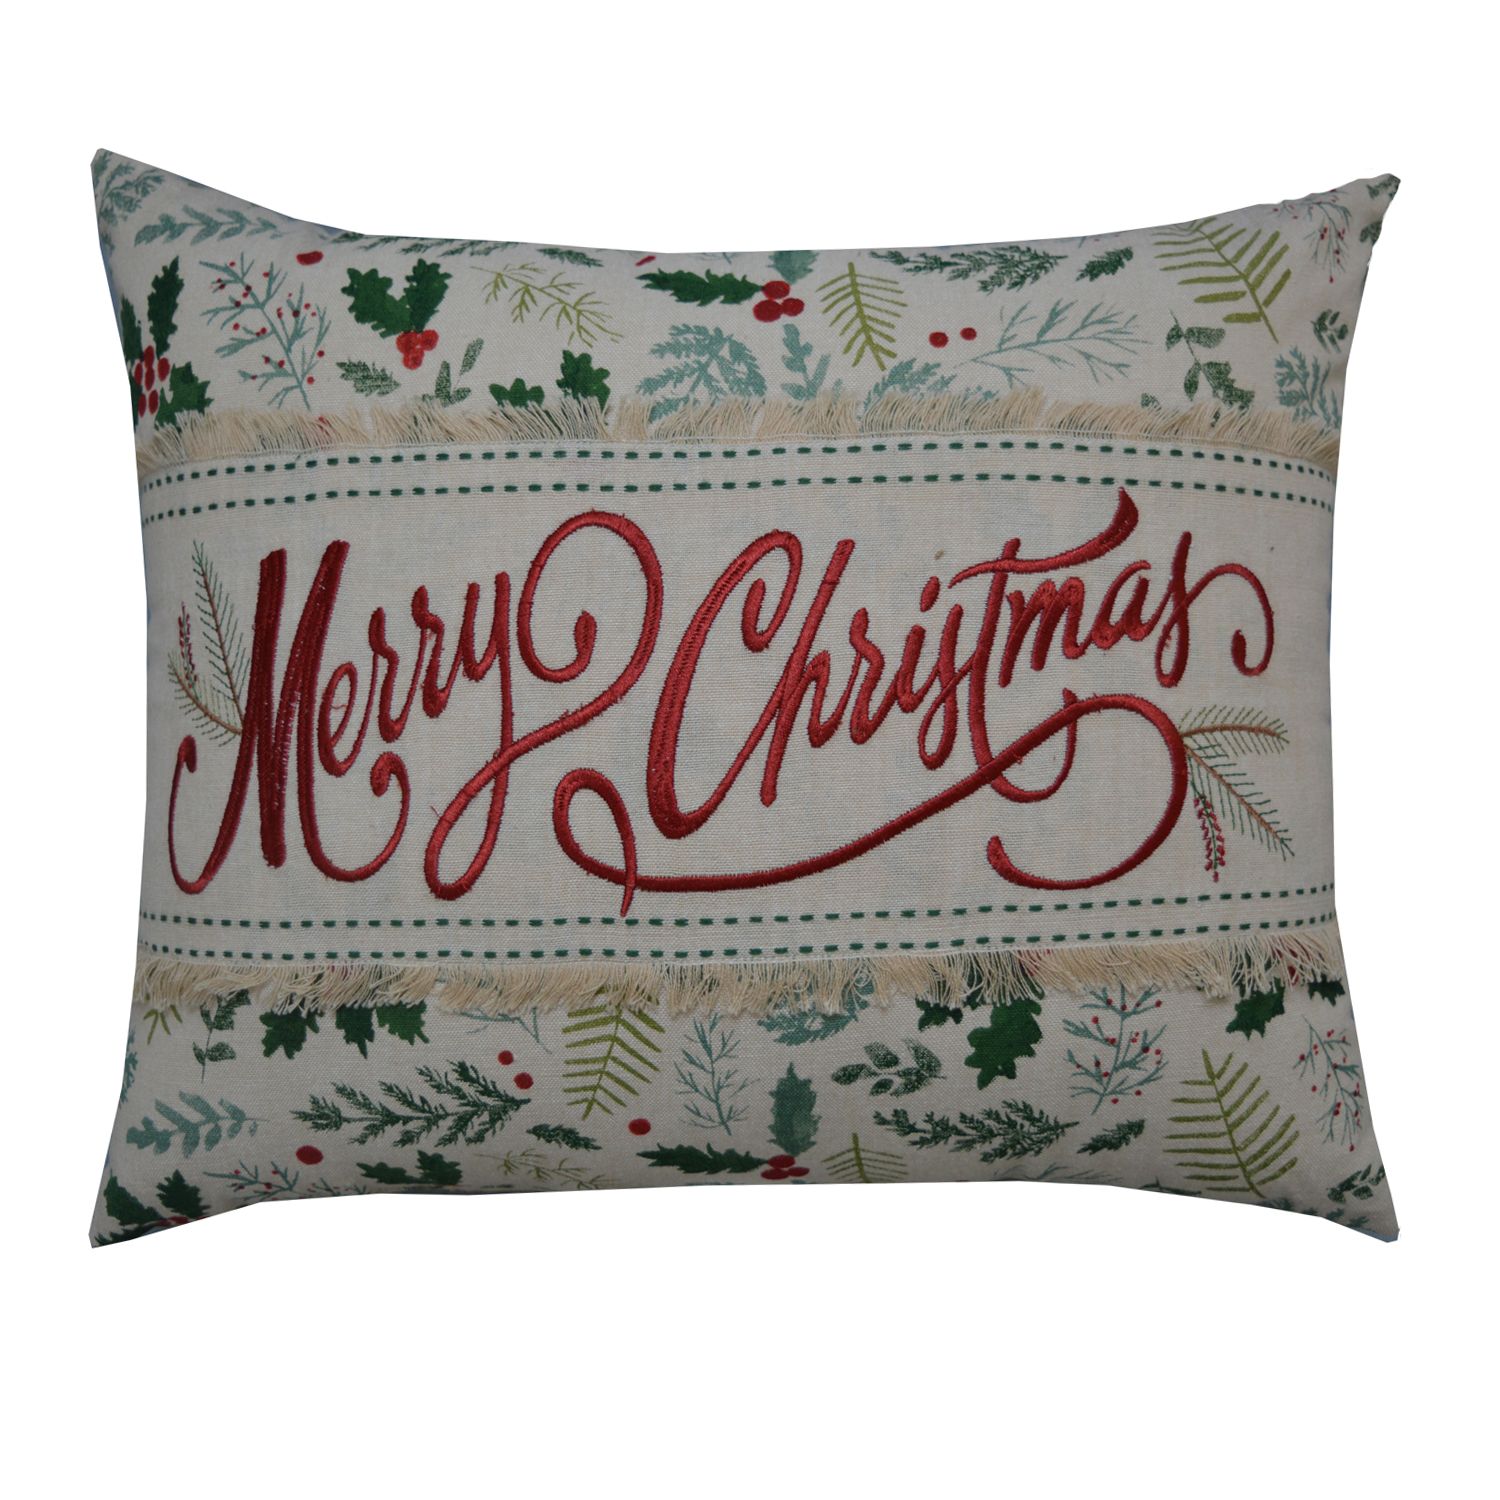 christmas pillows at kohl's